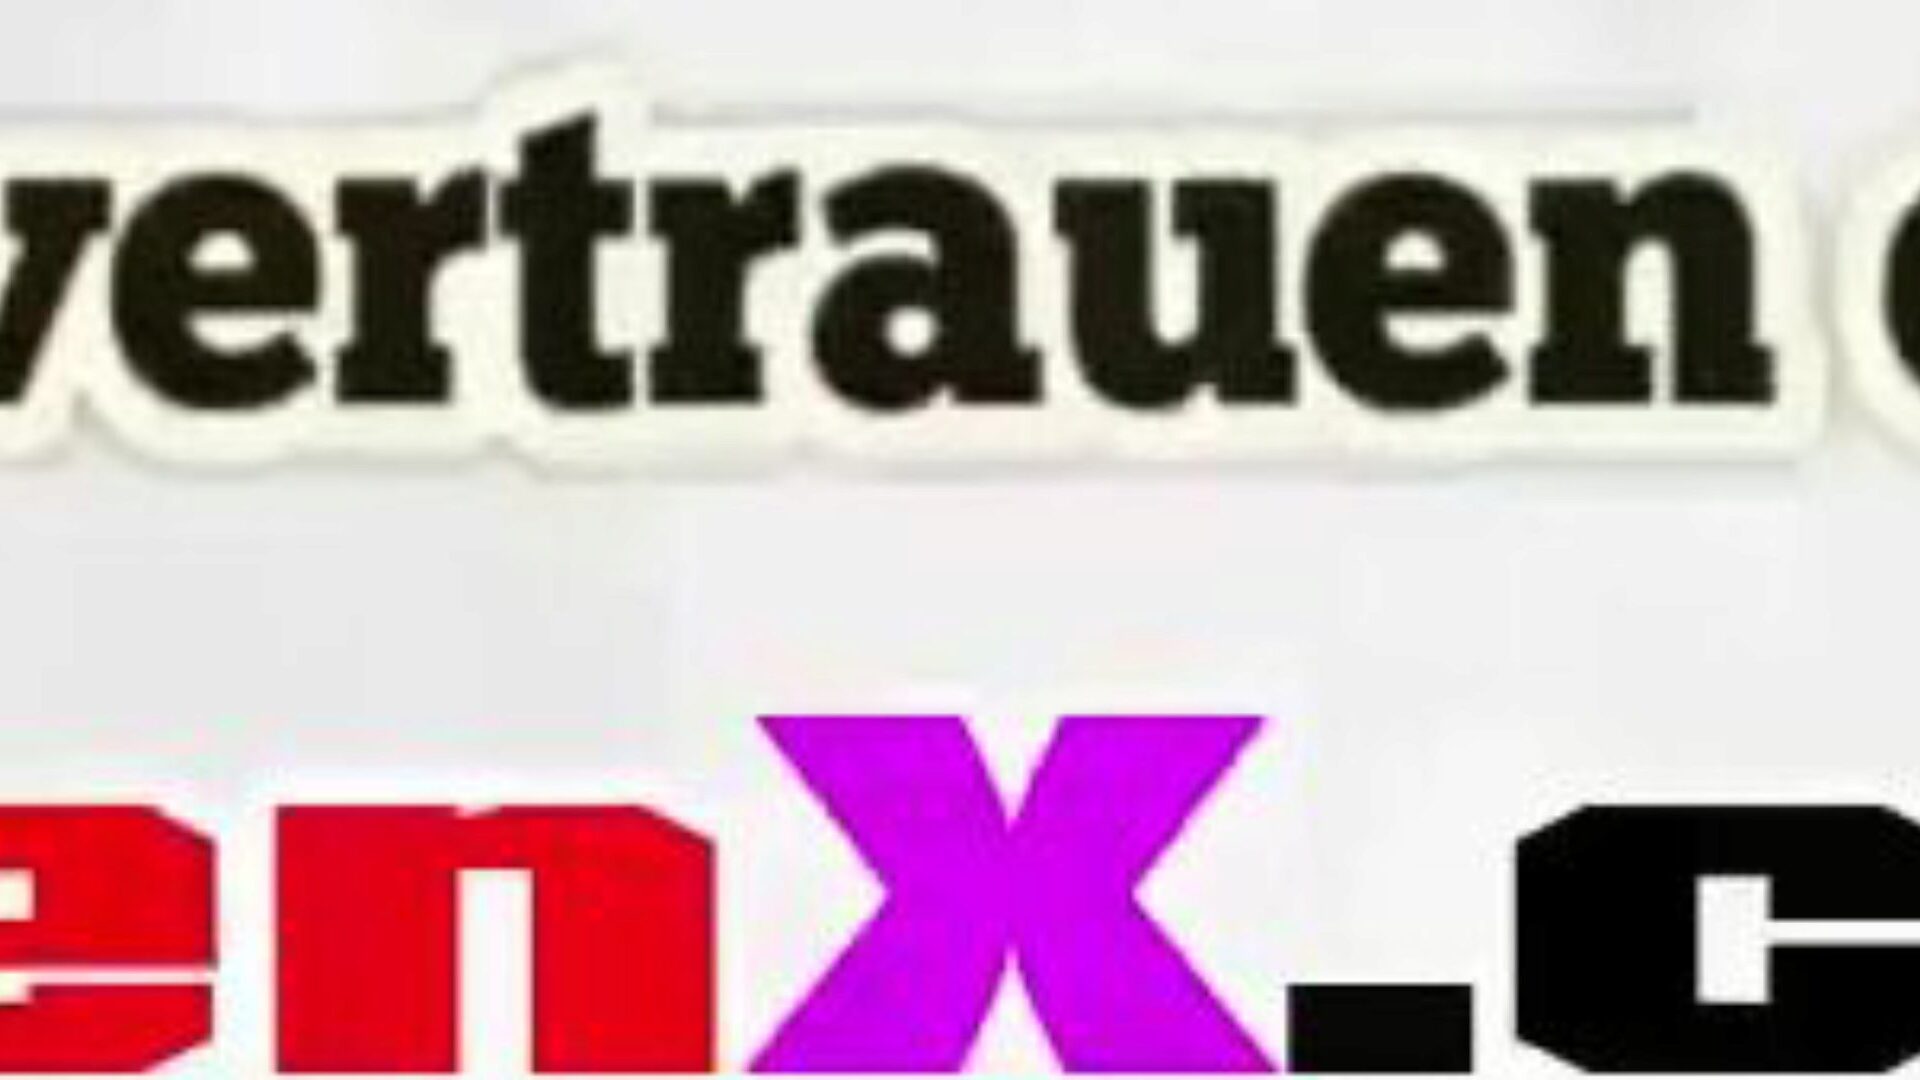 stiefmutter gefickt: gratis mutter tysk hd porno video f5 se stiefmutter gefickt tube fuckfest video for gratis for alle på xhamster, med den forbløffende samlingen av tysk mutter tysk & mutter tochter hd pornografi filmscene episoder